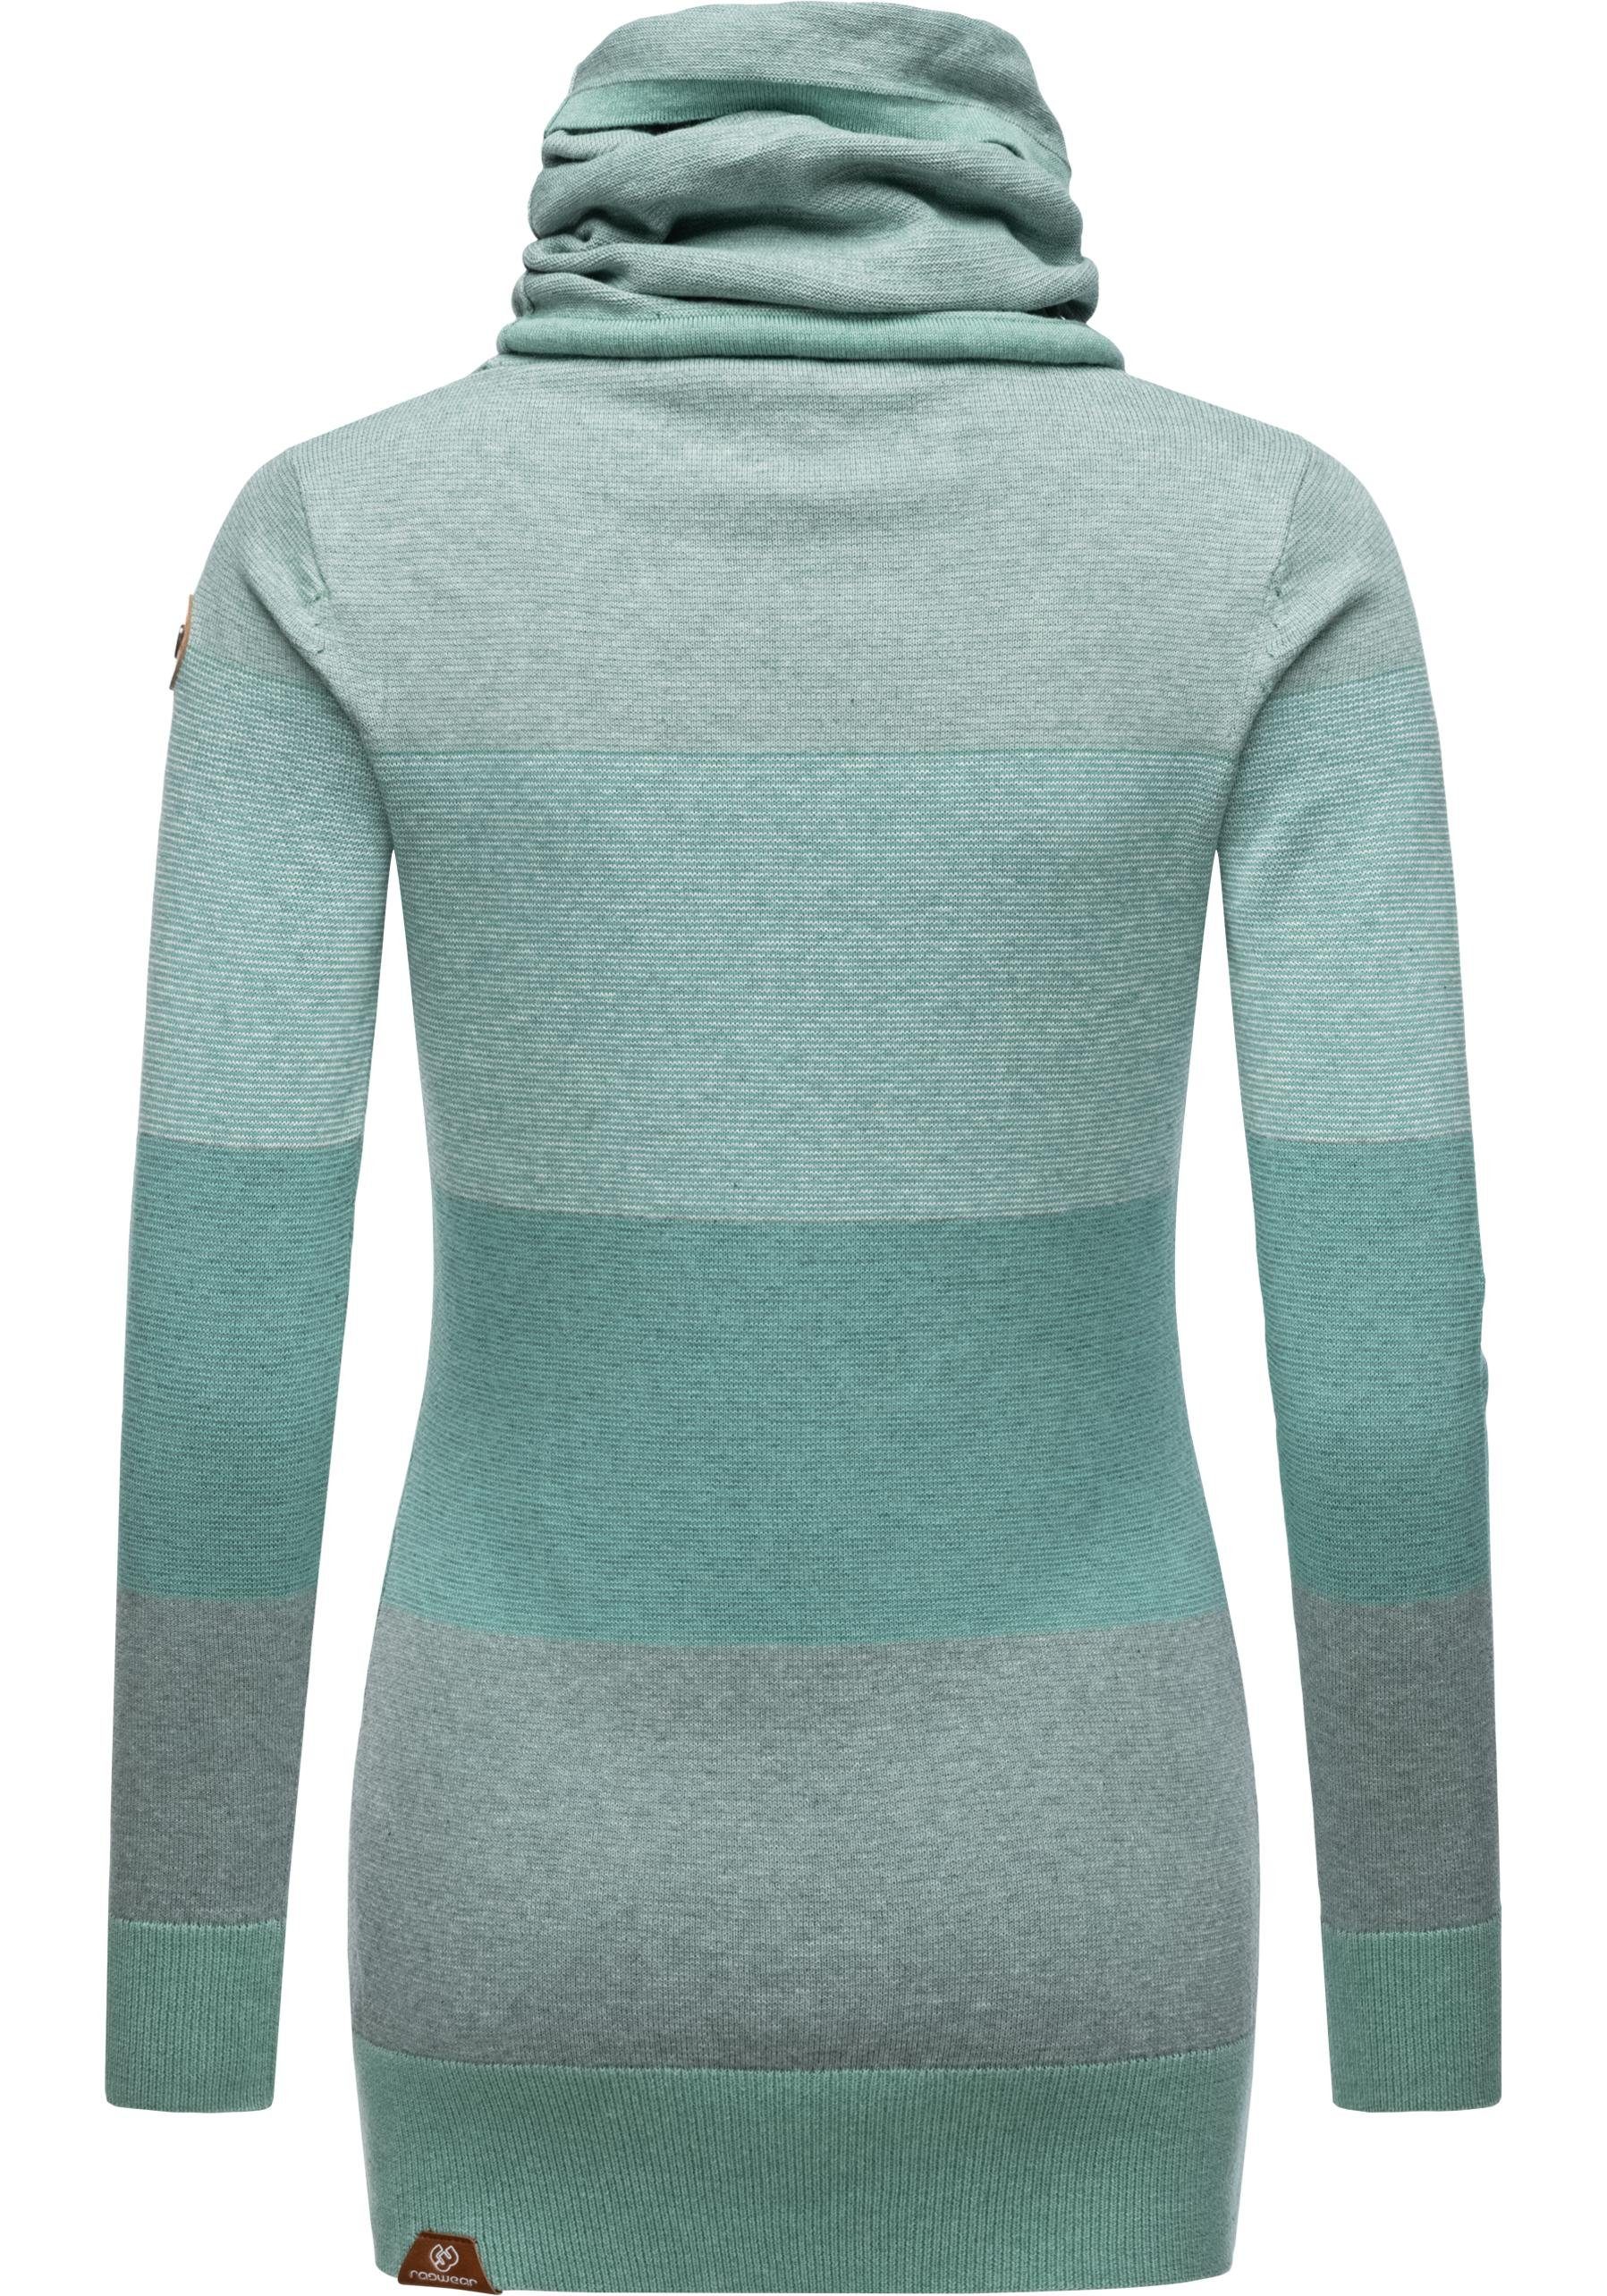 Ragwear Sweater Stripes Streifenmuster Babett Damen stylisches mit grün Langarm-Sweatshirt